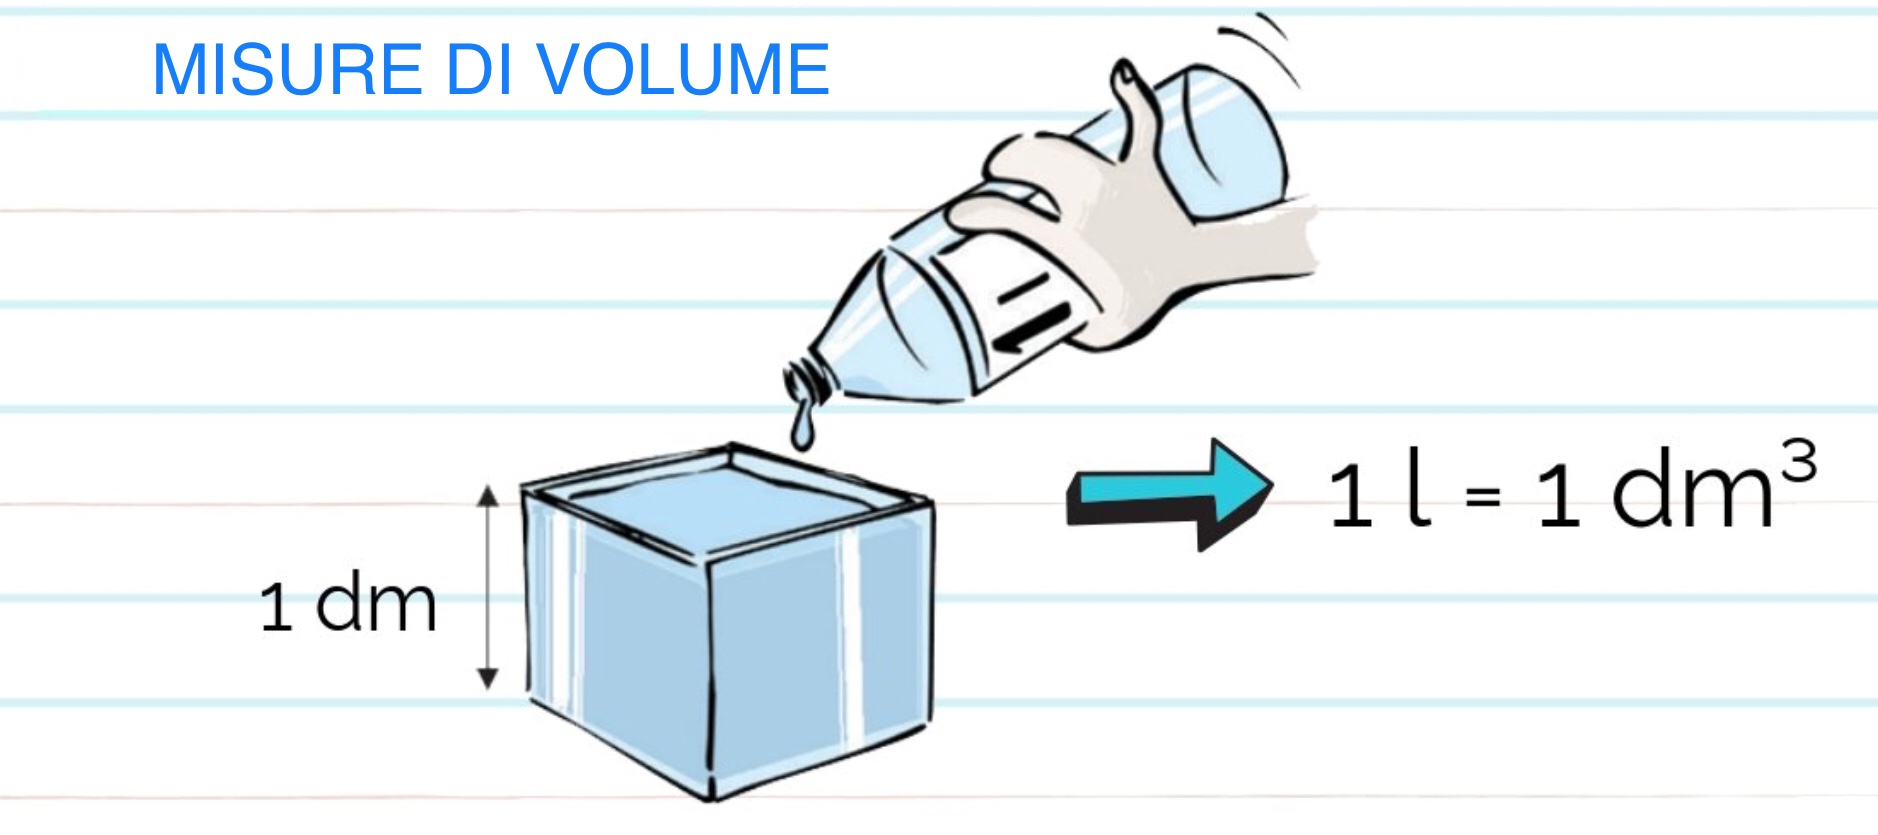 Come si calcolano i litri volume?